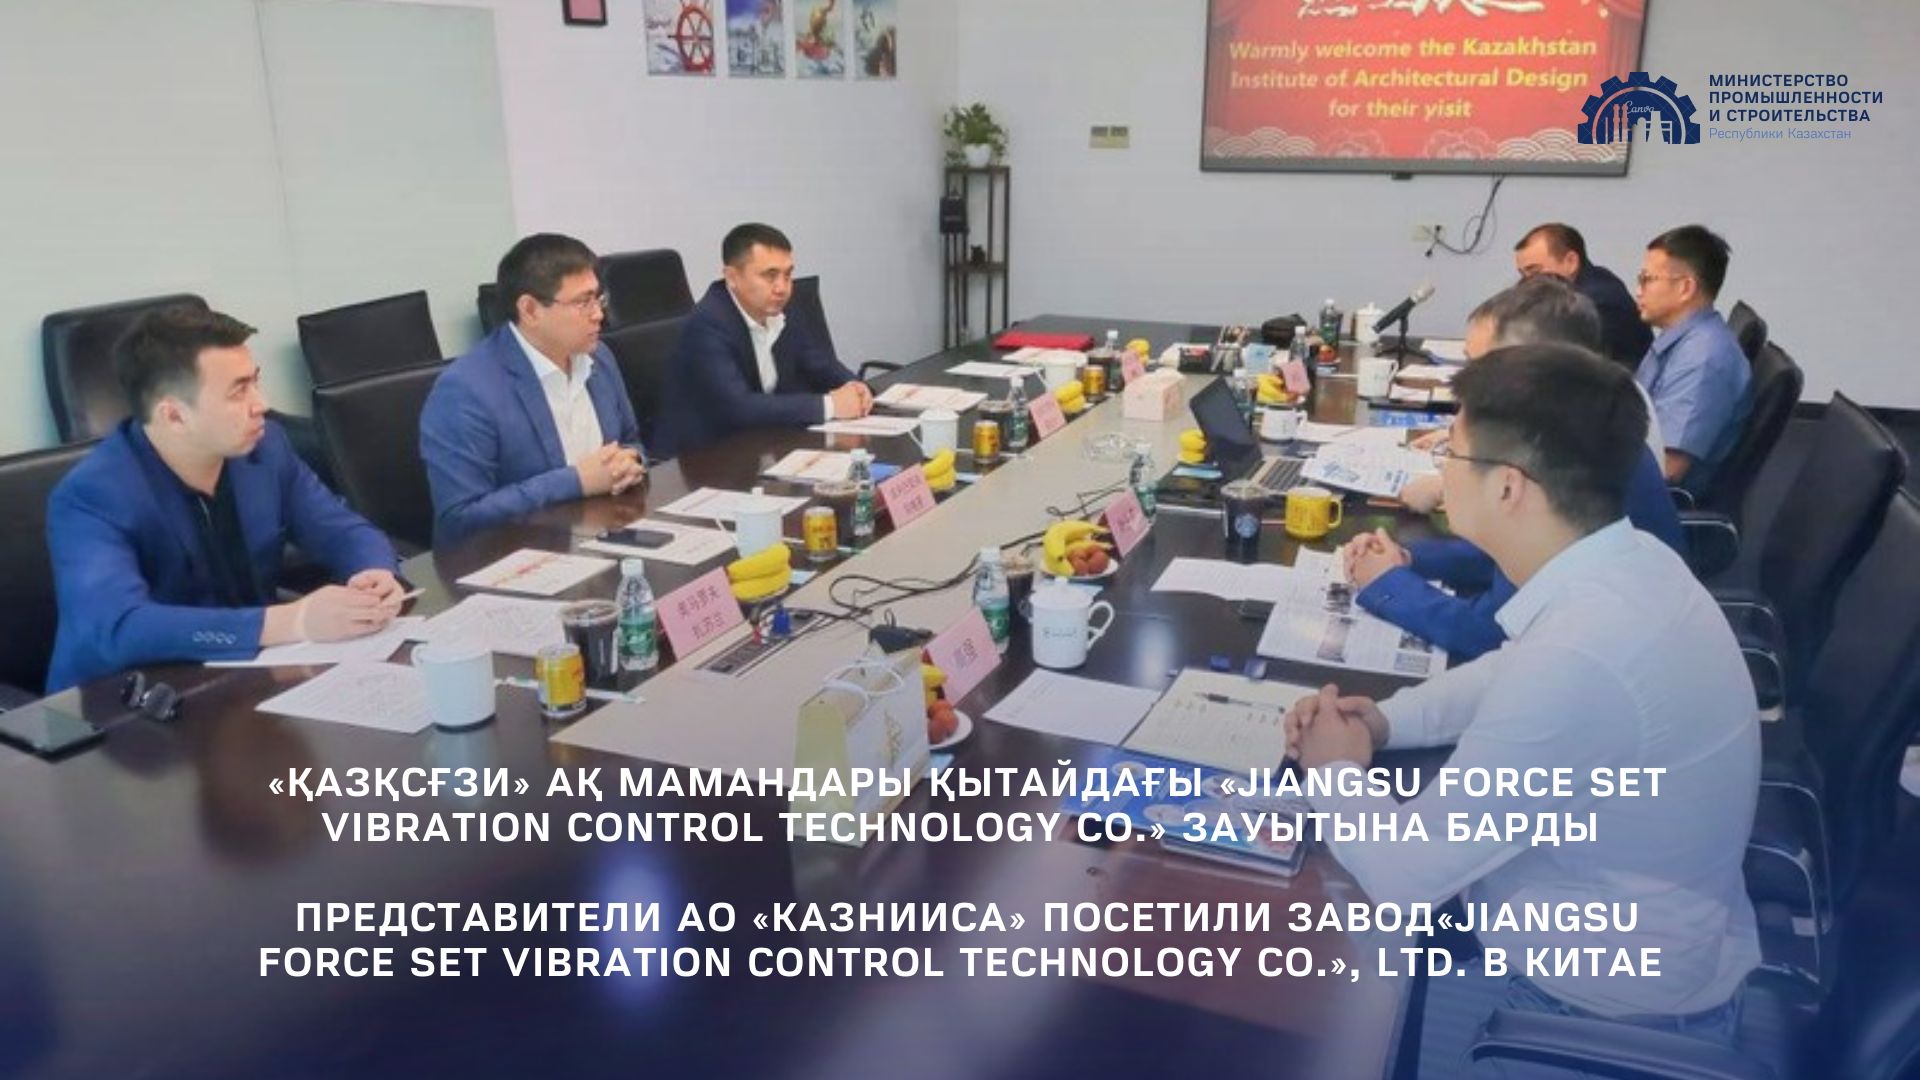 Представители АО «КазНИИСА» посетили завод  «Jiangsu Force set Vibration Control Technology Co.», Ltd. в Китае